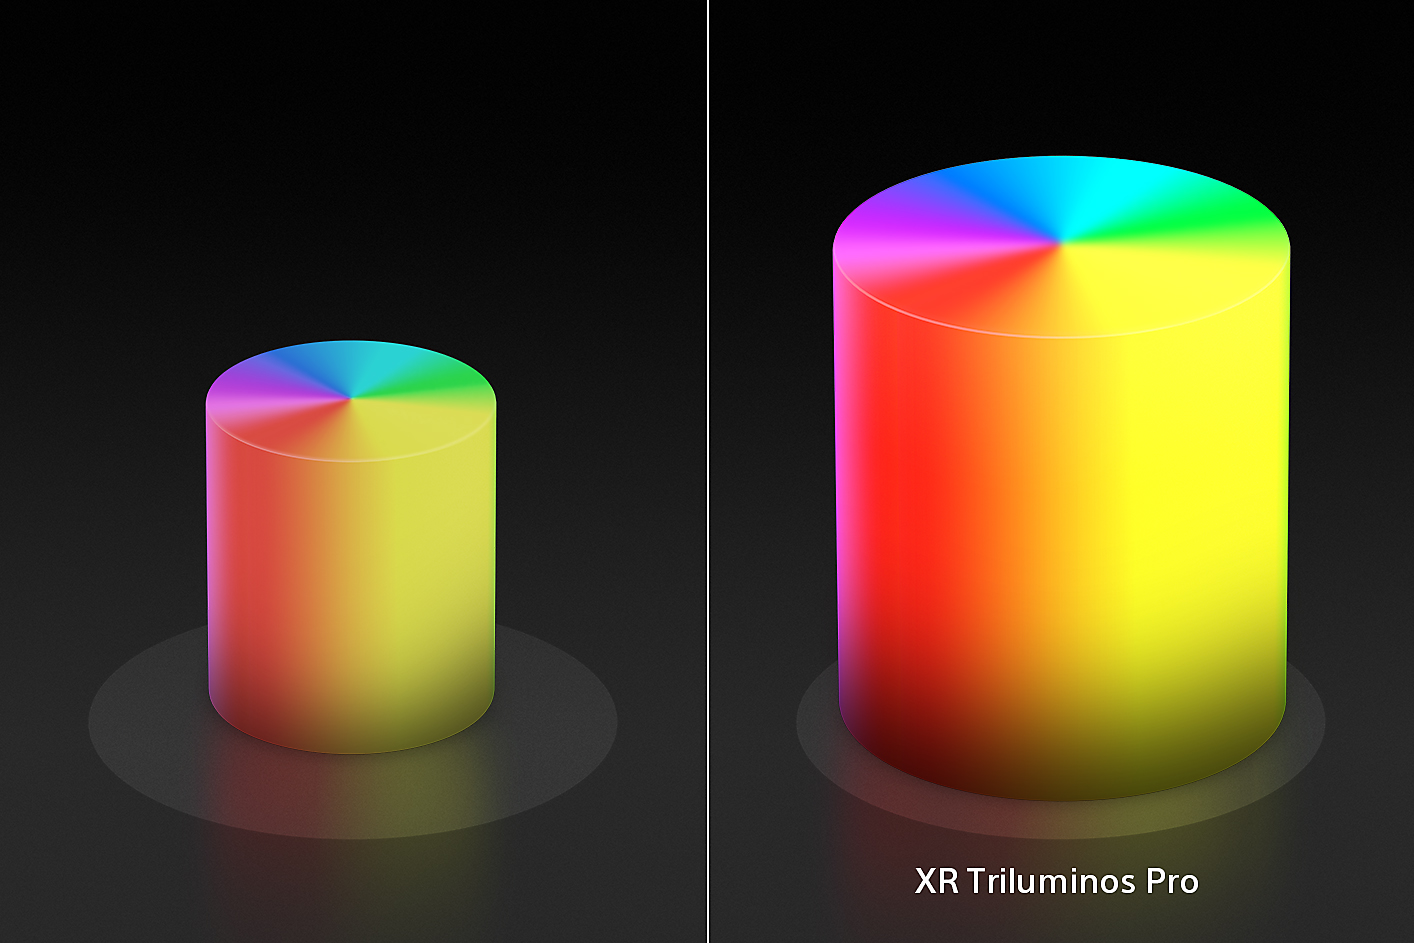 Розділений екран, що показує два кольорові конуси у формі свічки, менший ліворуч і більший праворуч, з покращеними кольорами та текстурами XR Triluminos Pro